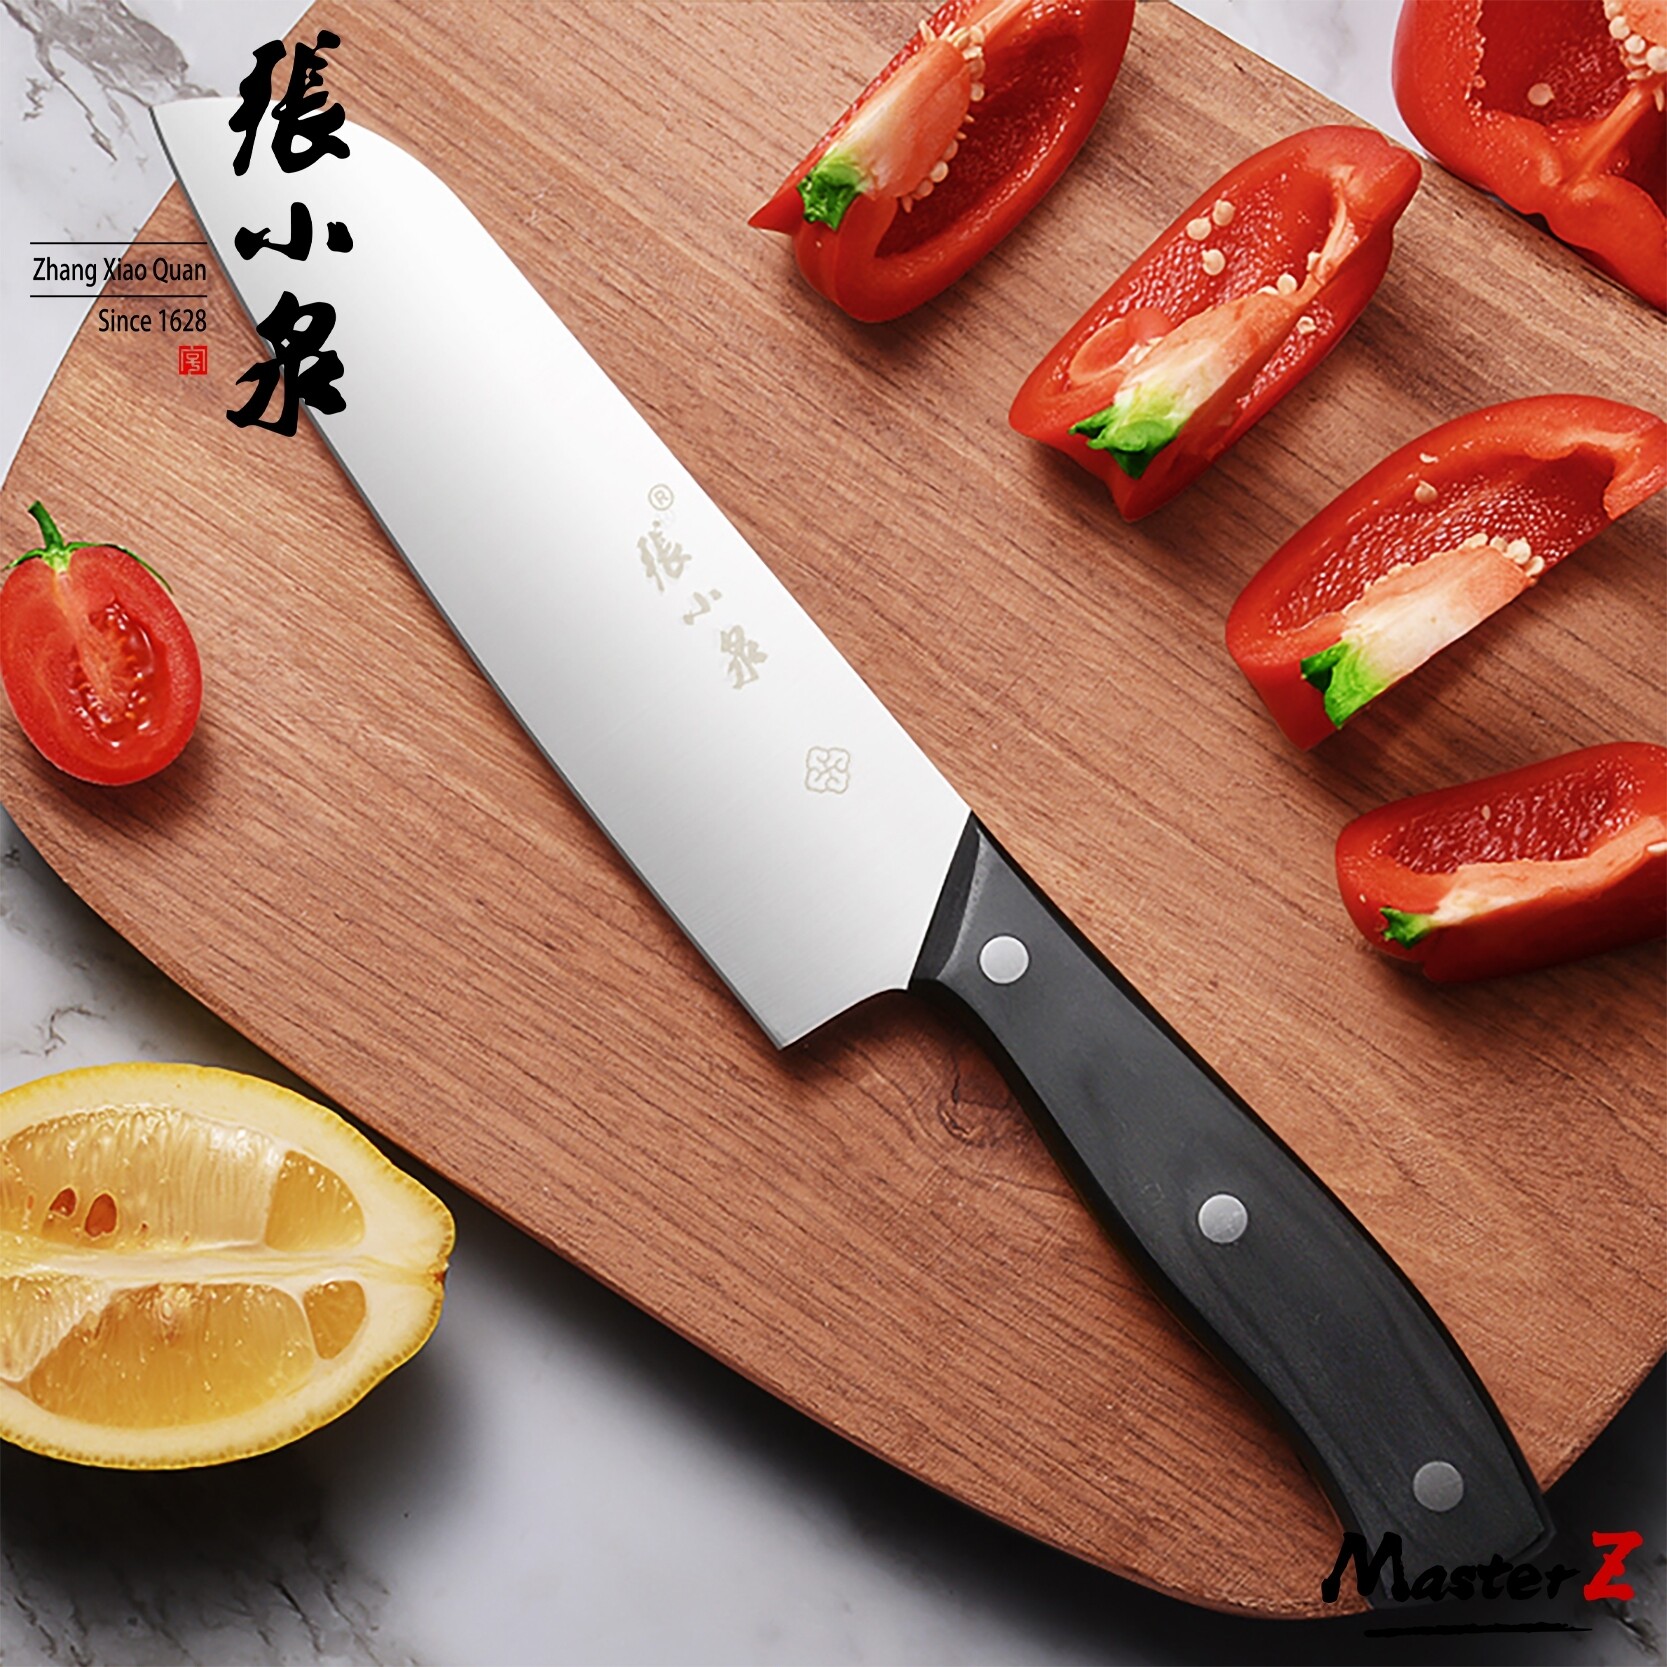 มีดครัว ZhangXiaoQuan มีด มีดอเนกประสงค์ มีดหั่นผัก มีดหั่นผลไม้ ปอกผัก ปอกผลไม้ ต่างๆ D11173200S / MasterZ